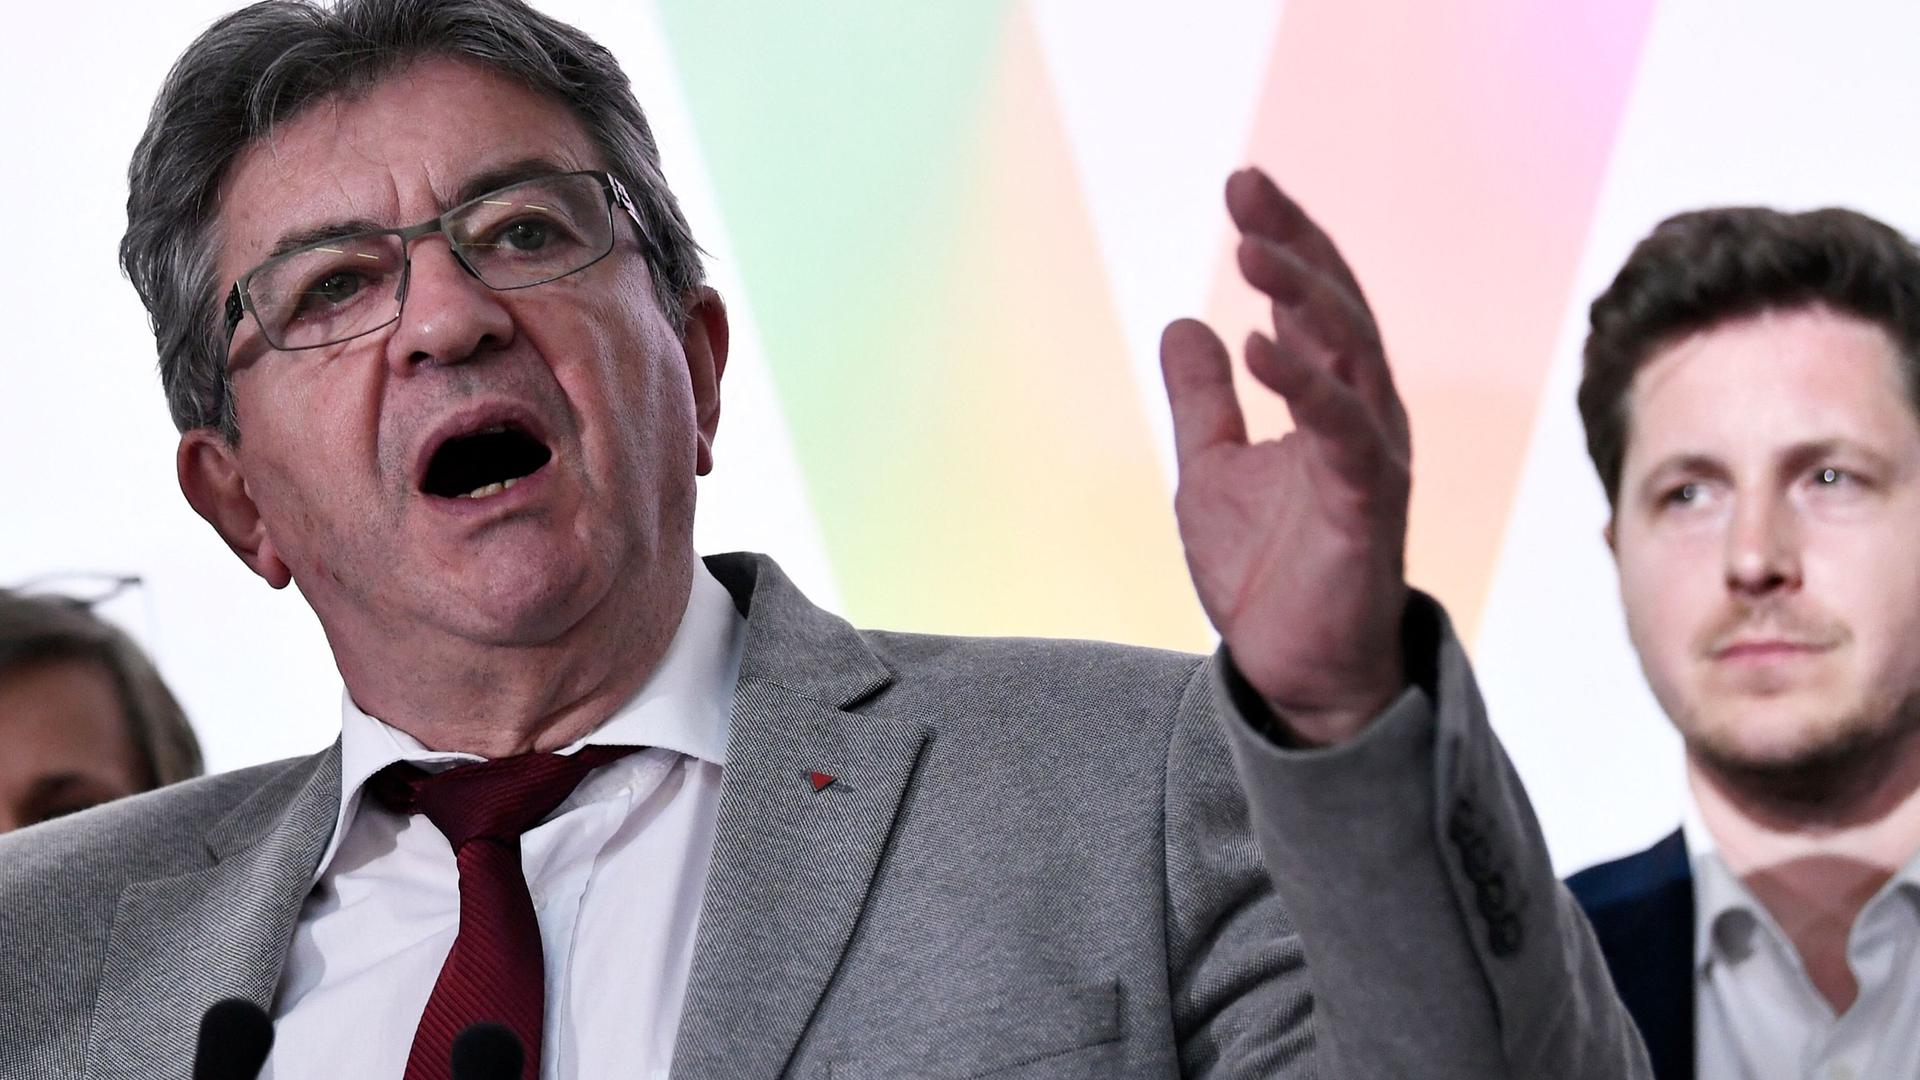 Les résultats du premier tour des élections législatives ont été un grand succès pour le populiste de gauche Jean-Luc Mélenchon.